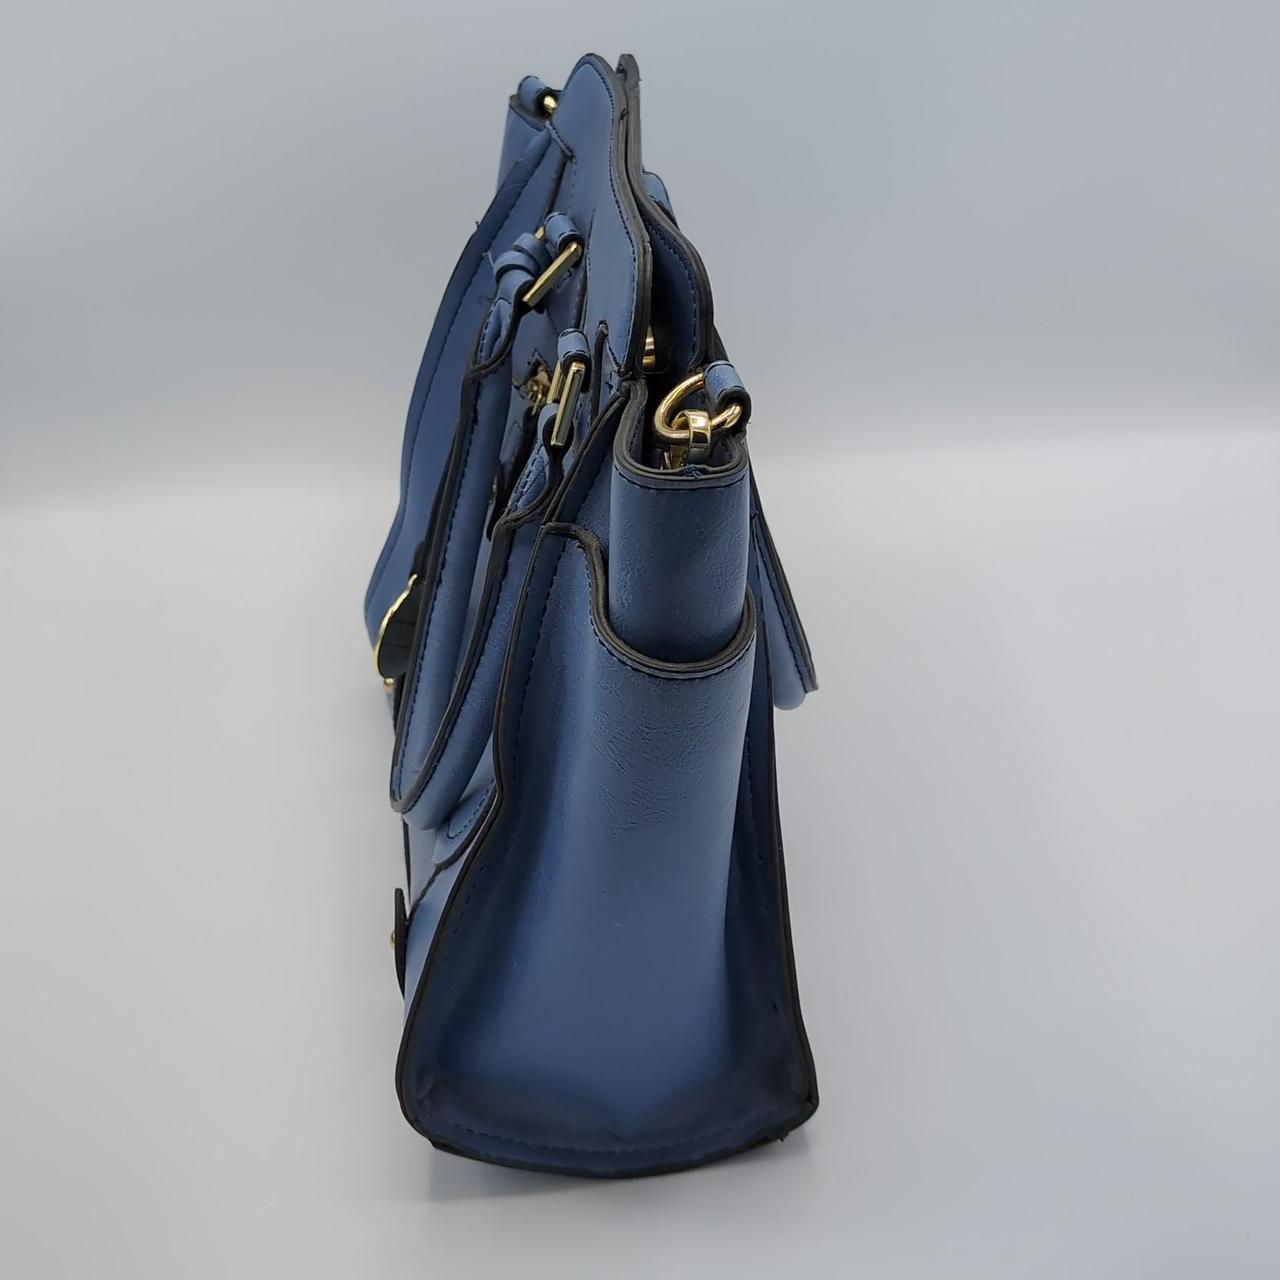 London Fog Weather or Not Faux Ostrich / Leather Handbag Purse Shoulder Bag  c3 | eBay